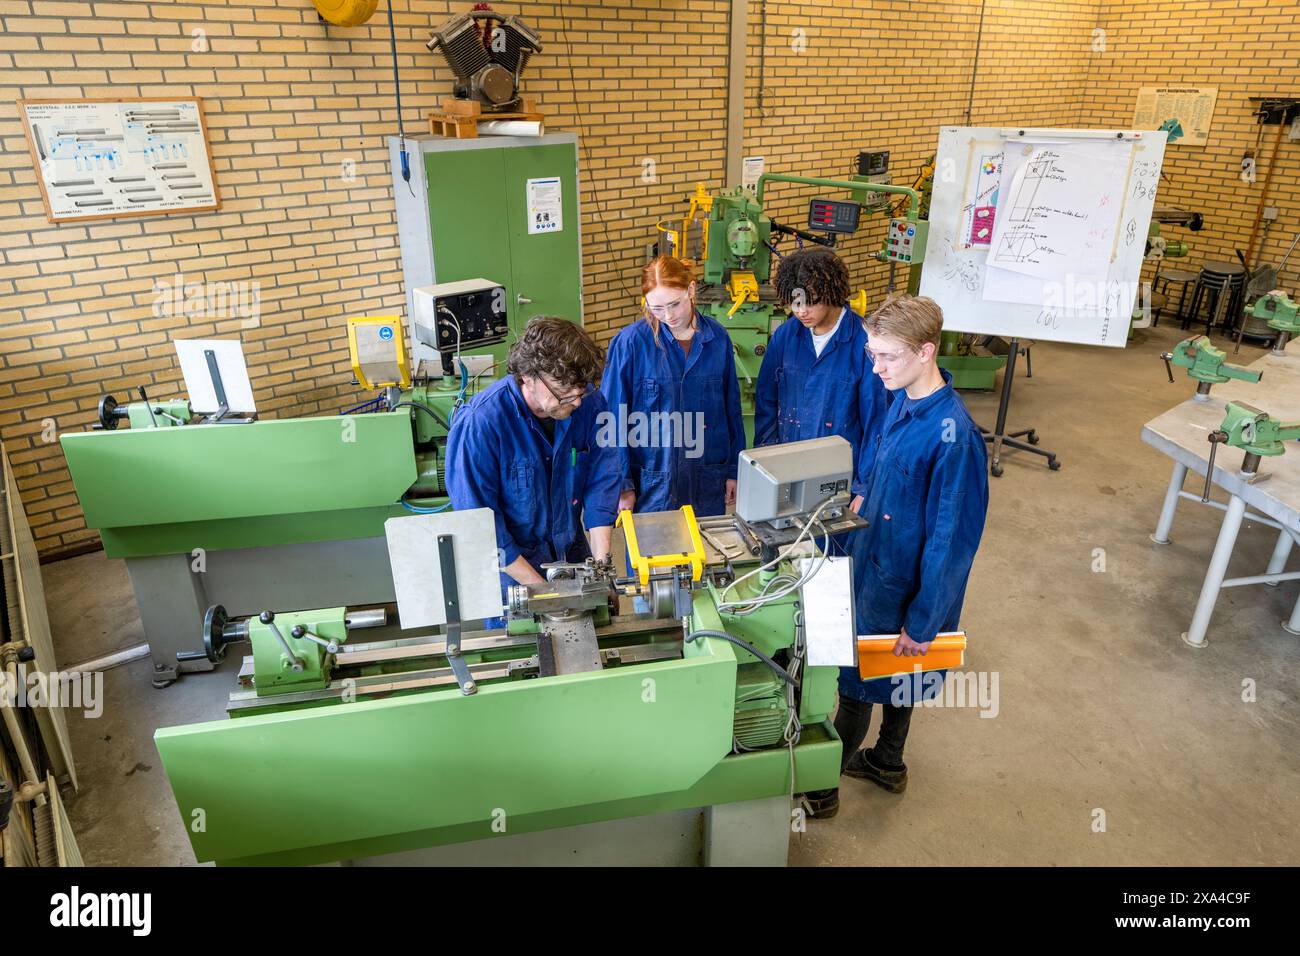 Quatre personnes en tenue de travail bleue utilisent des machines industrielles vertes dans un atelier, collaborant sur une tâche technique. Banque D'Images